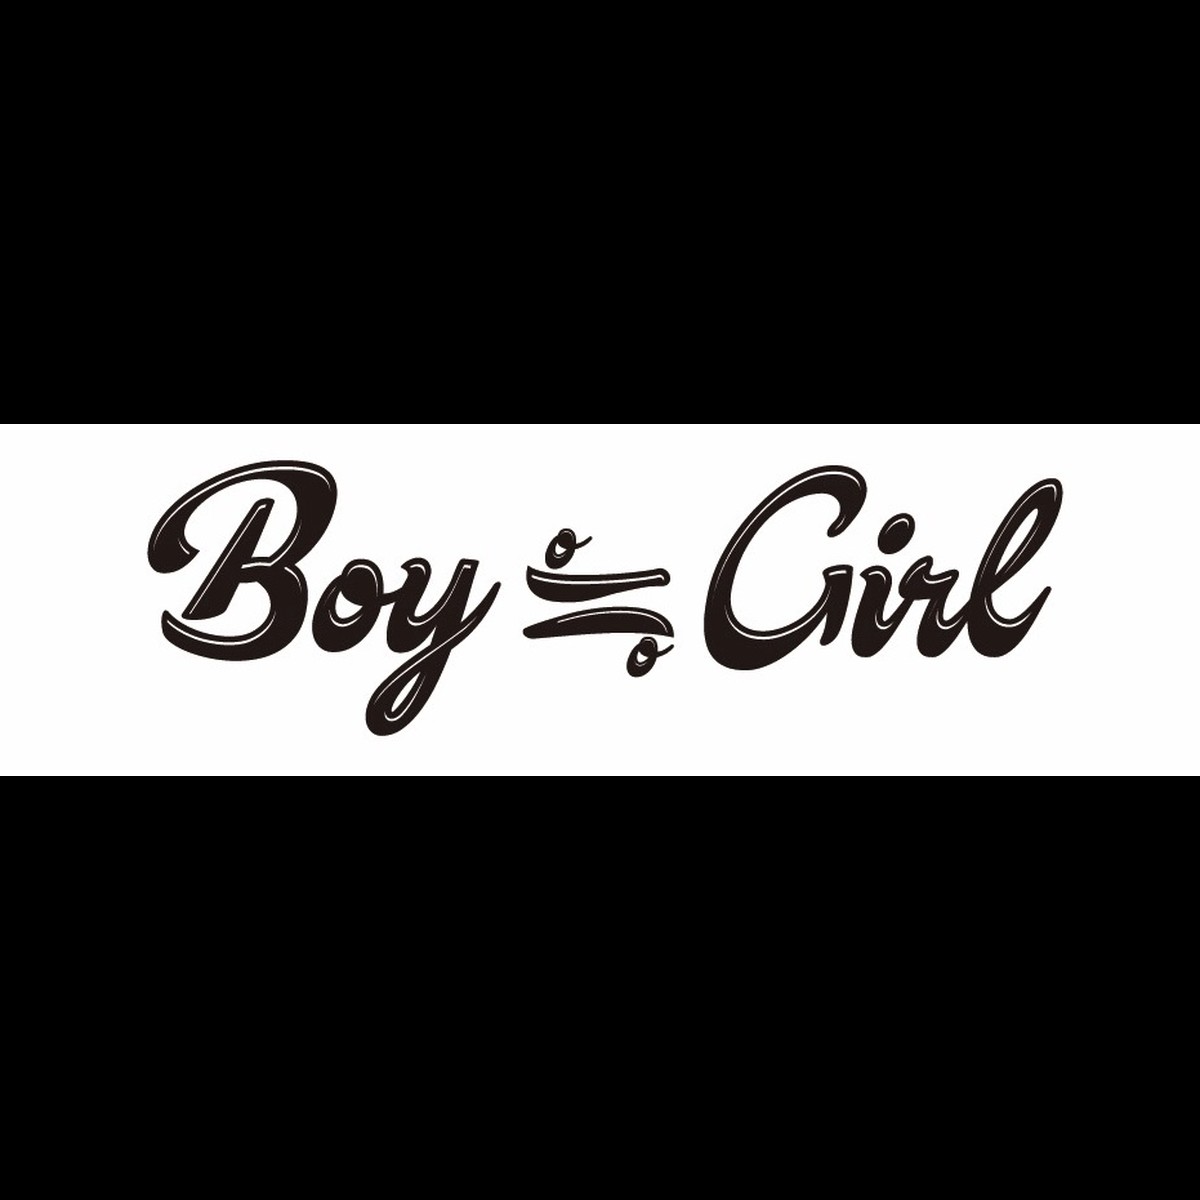 Boy ≒ Girl